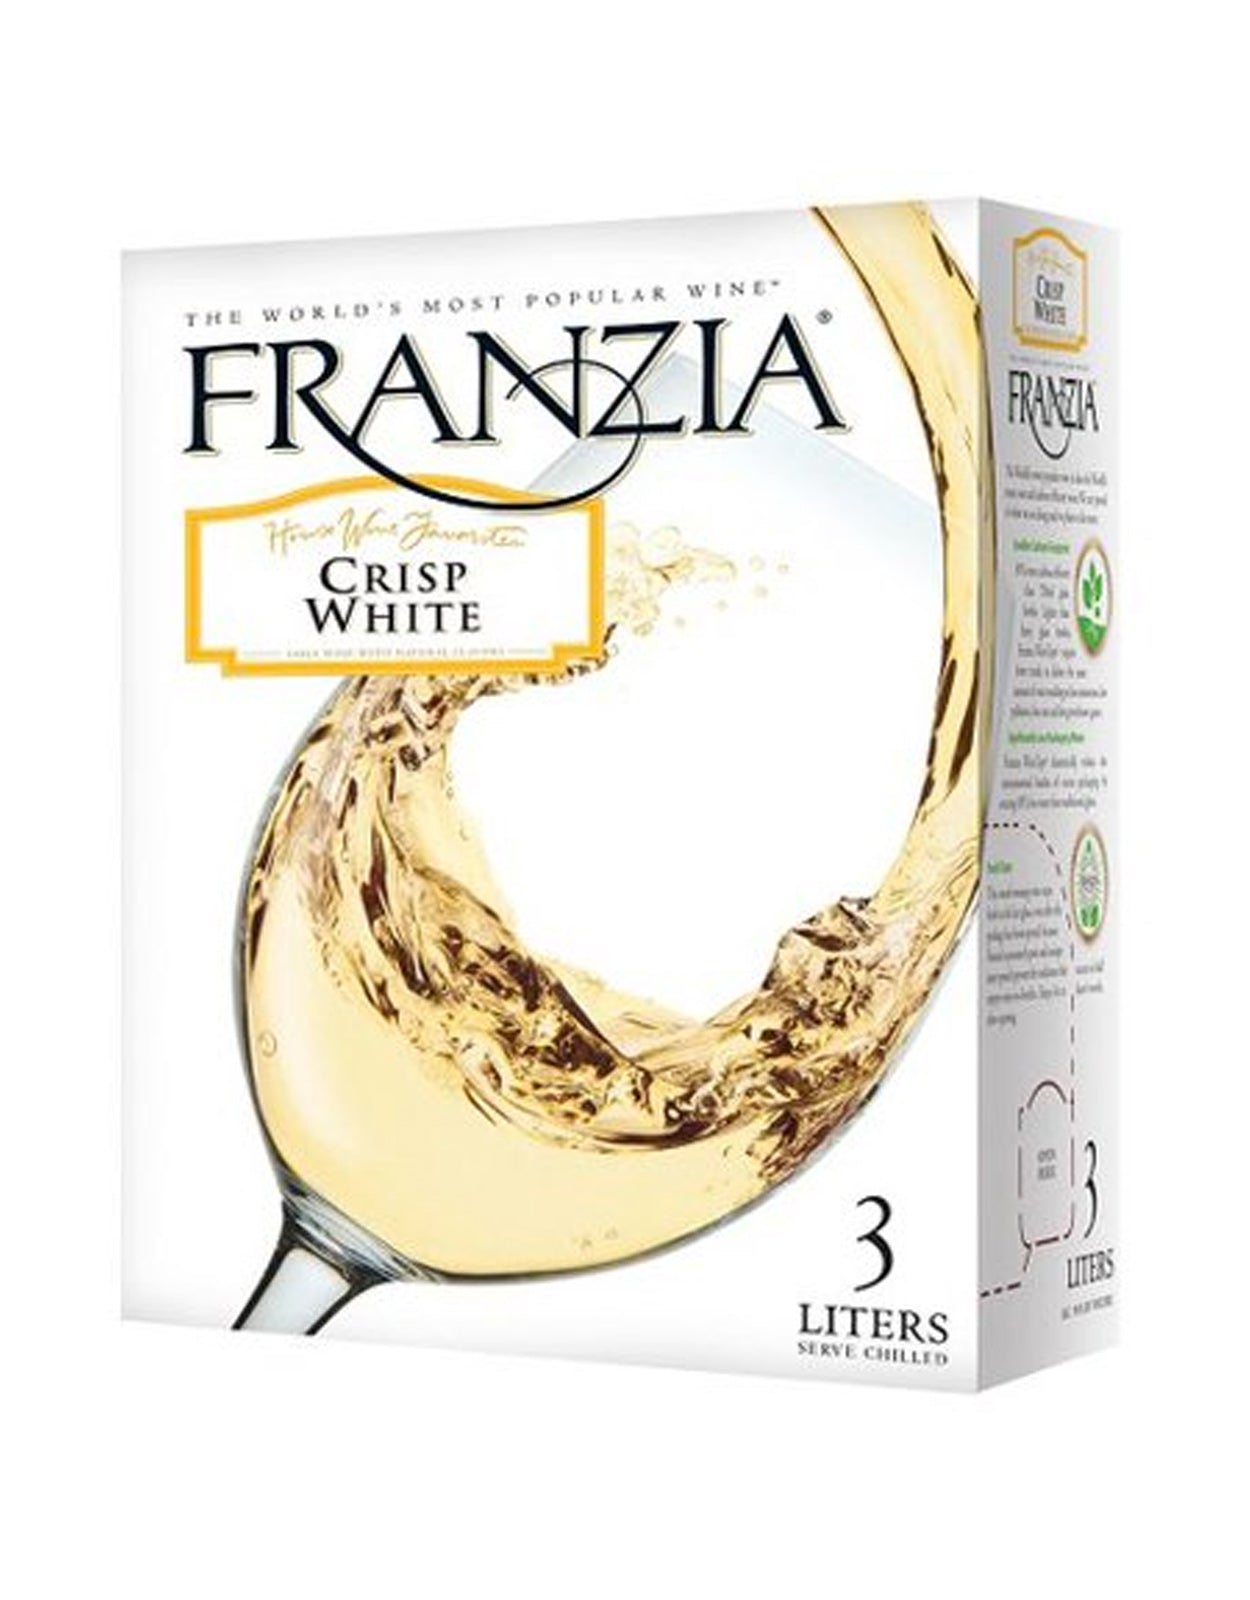 Franzia Crisp White - 3 Litre Box